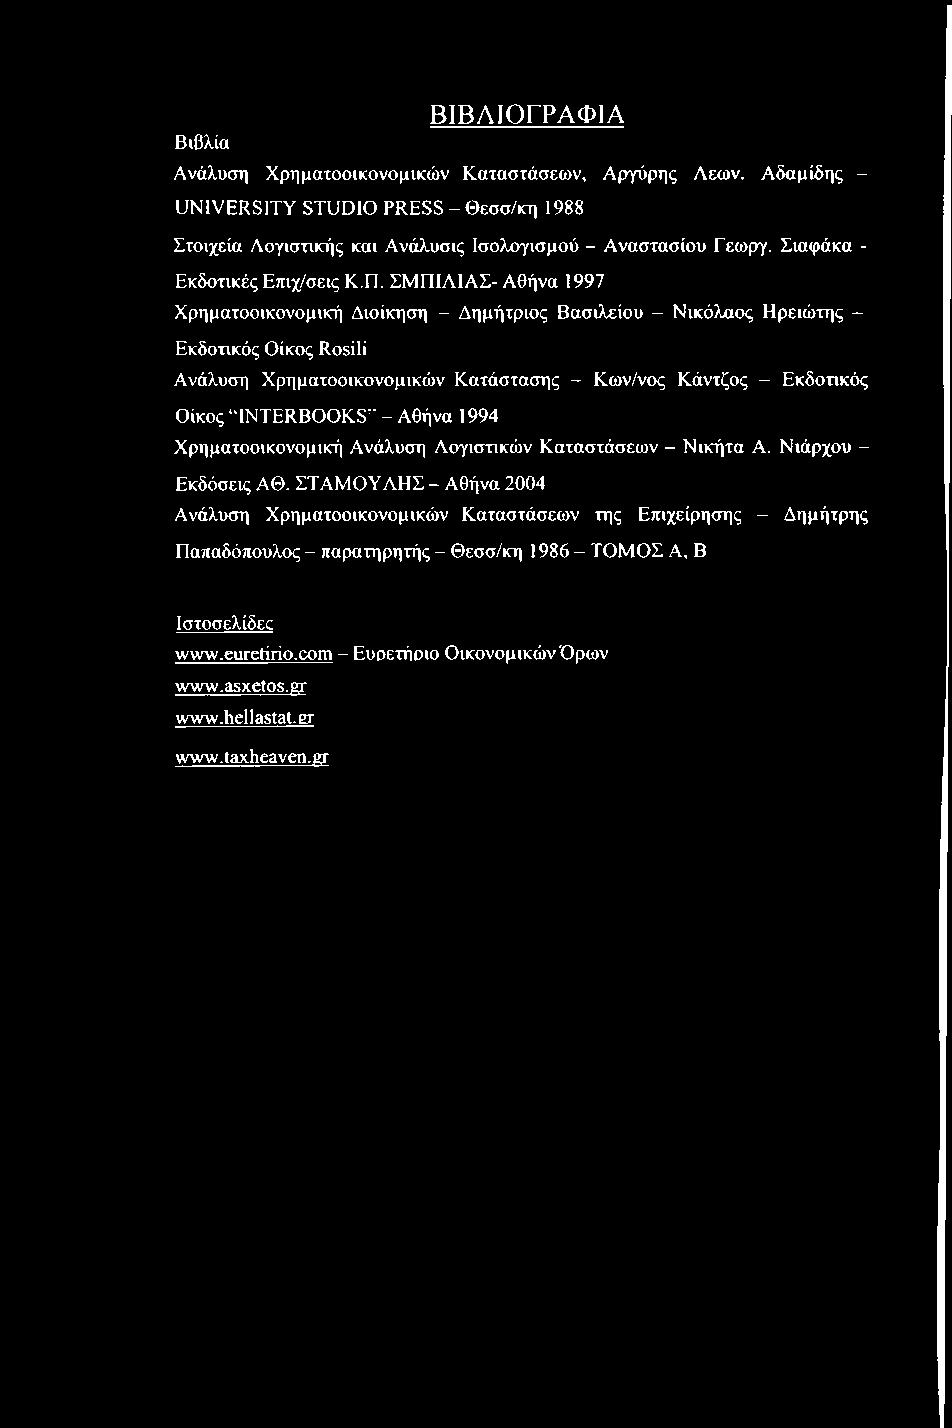 ΣΜΠΙΑΙΑΣ- Αθήνα 1997 Χρηματοοικονομική Διοίκηση - Δημήτριος Βασιλείου - Νικόλαος Ηρειώτης - Εκδοτικός Οίκος Rosili Ανάλυση Χρηματοοικονομικών Κατάστασης - Κων/νος Κάντζος - Εκδοτικός Οίκος